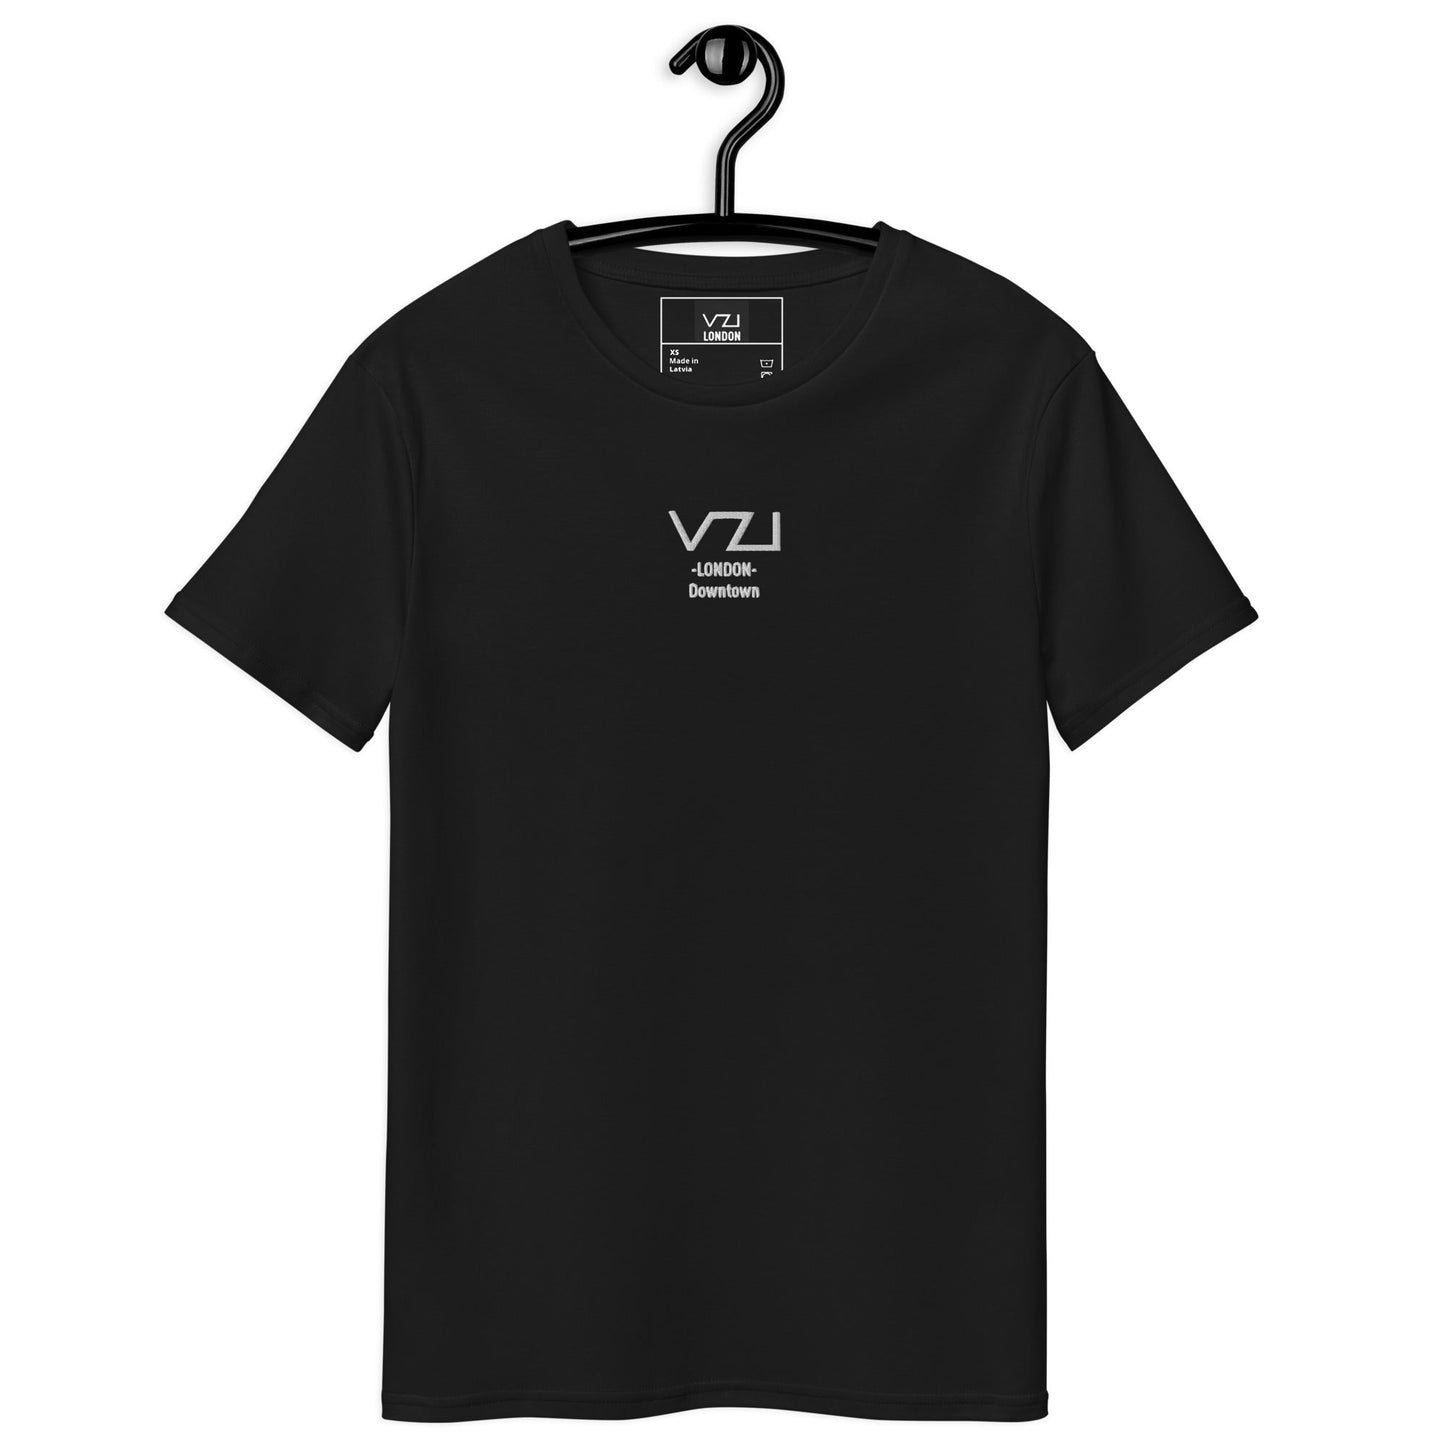 VZI LONDON: T-Shirt For Men's - Premium Cotton - Downtown - Vazzari Couture